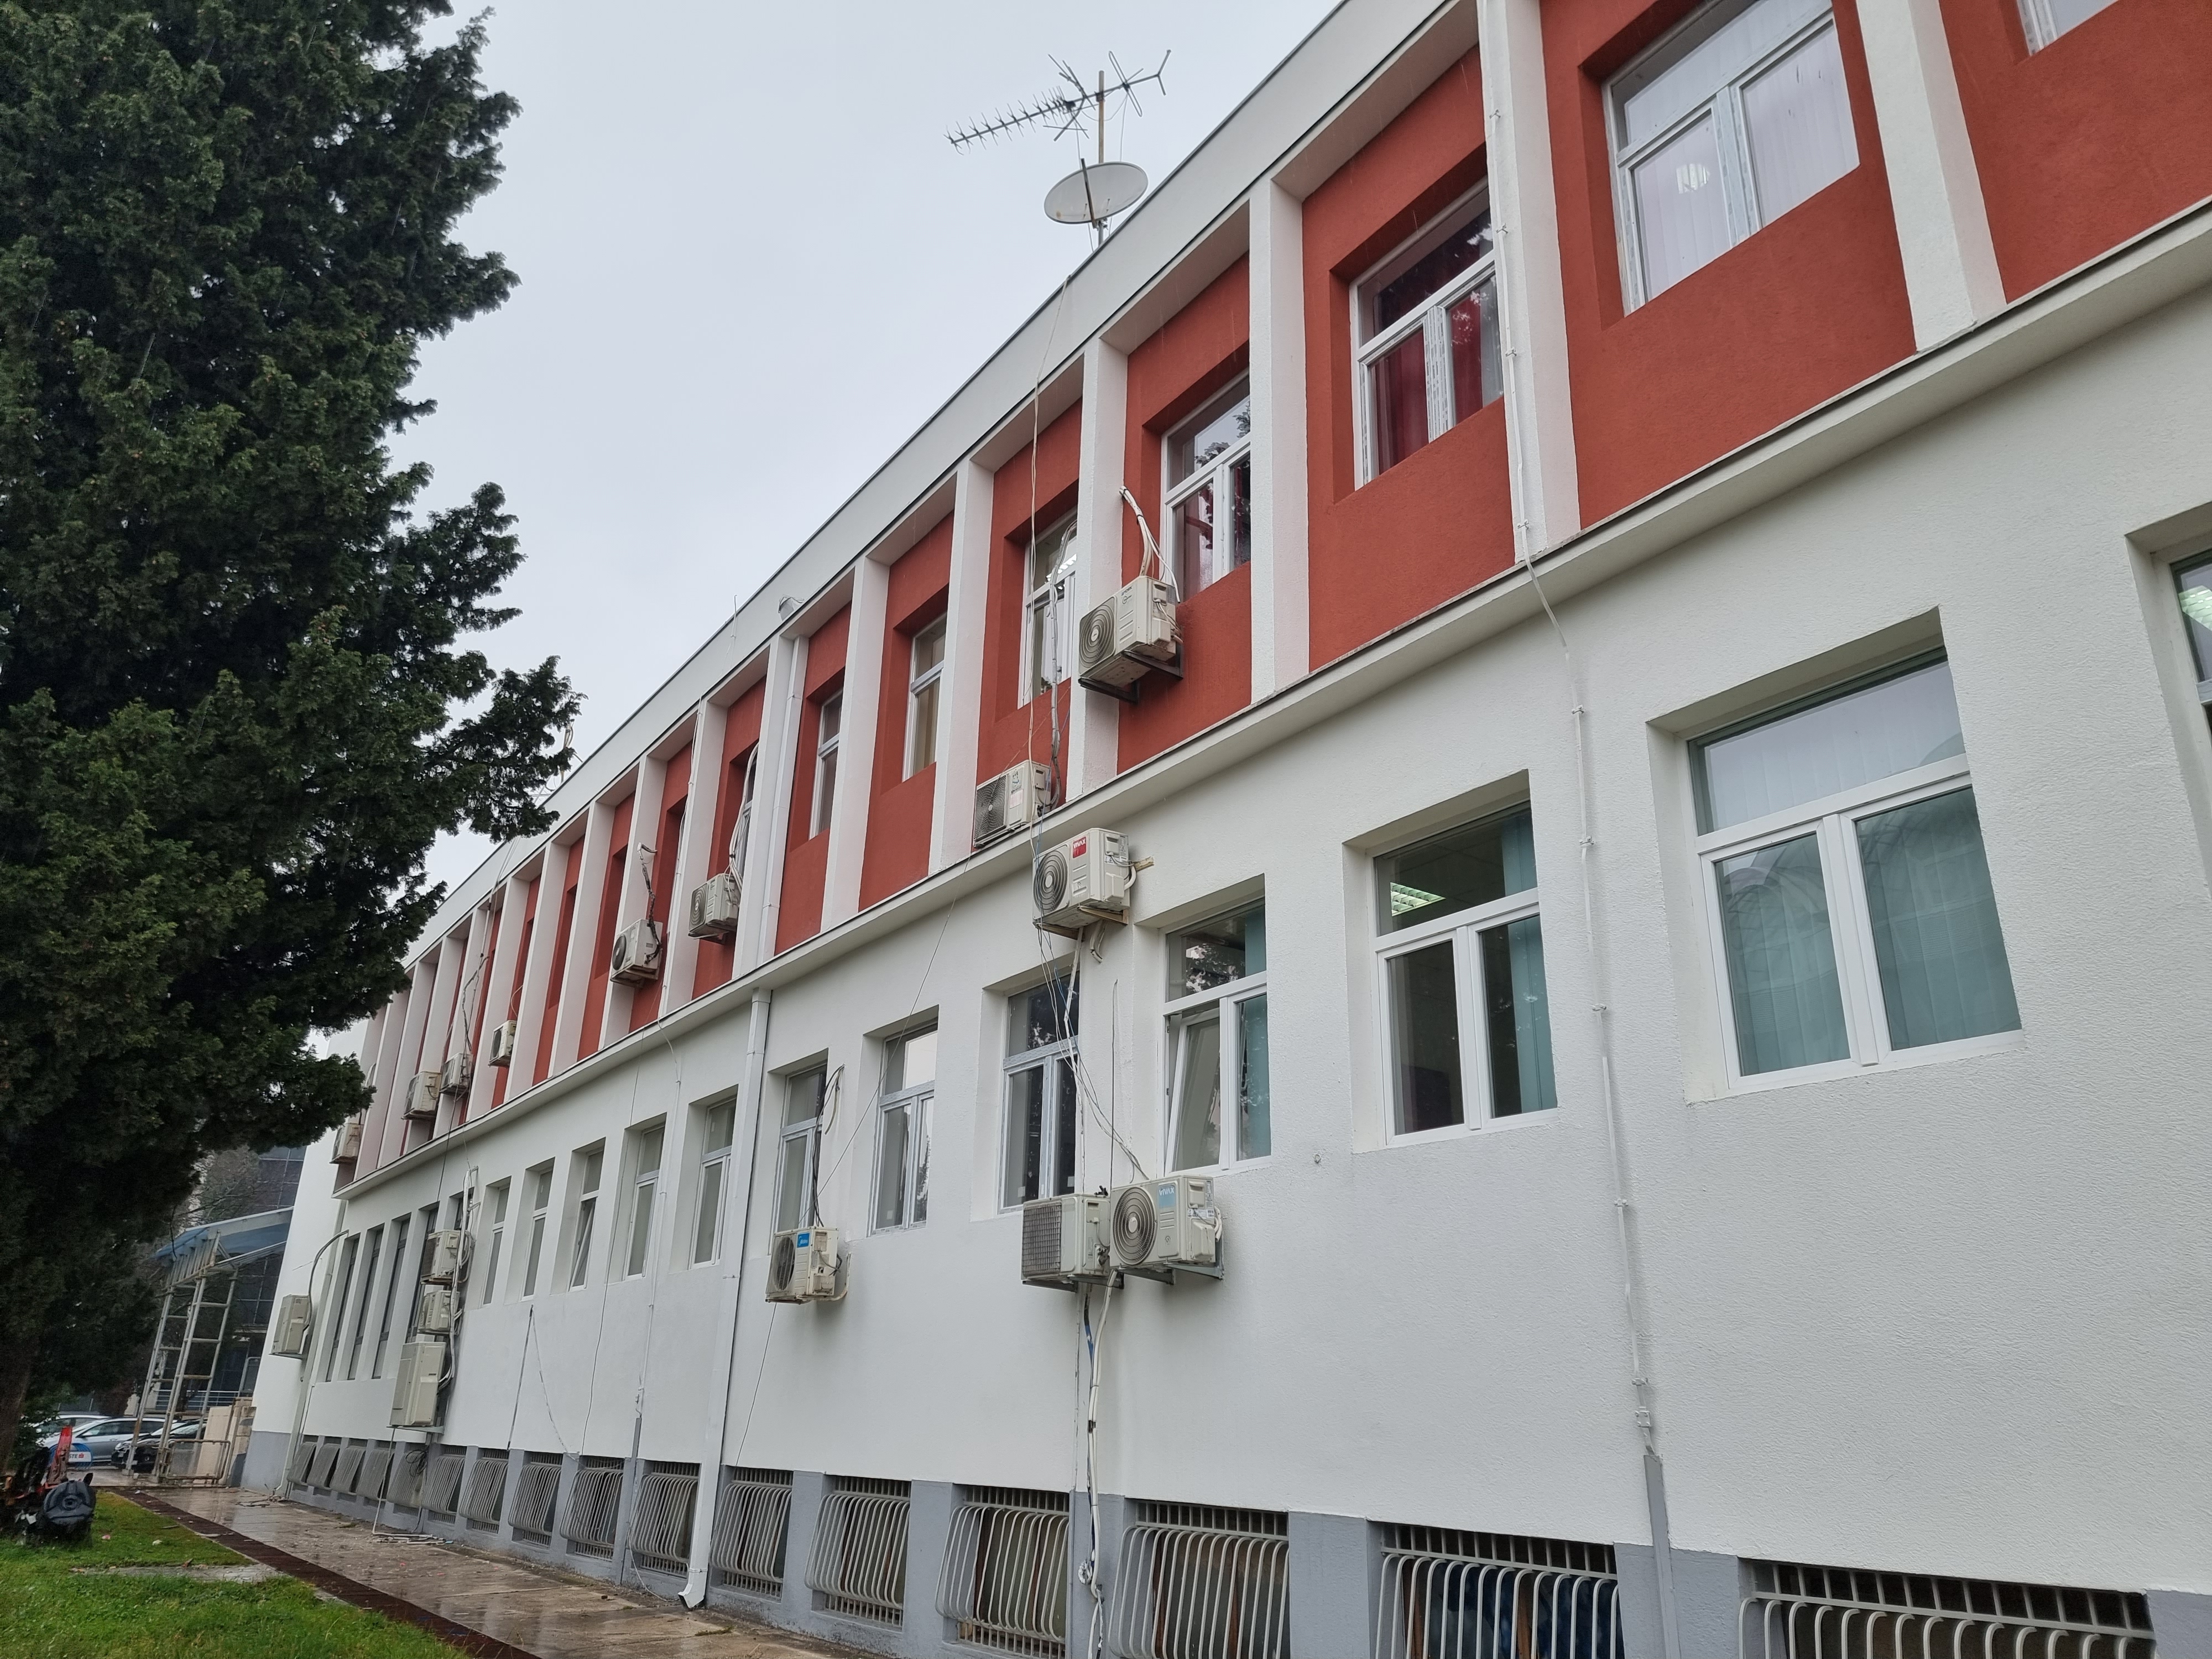 Završena temeljna sanacija fasade na objektu KIC-a "Budo Tomović"